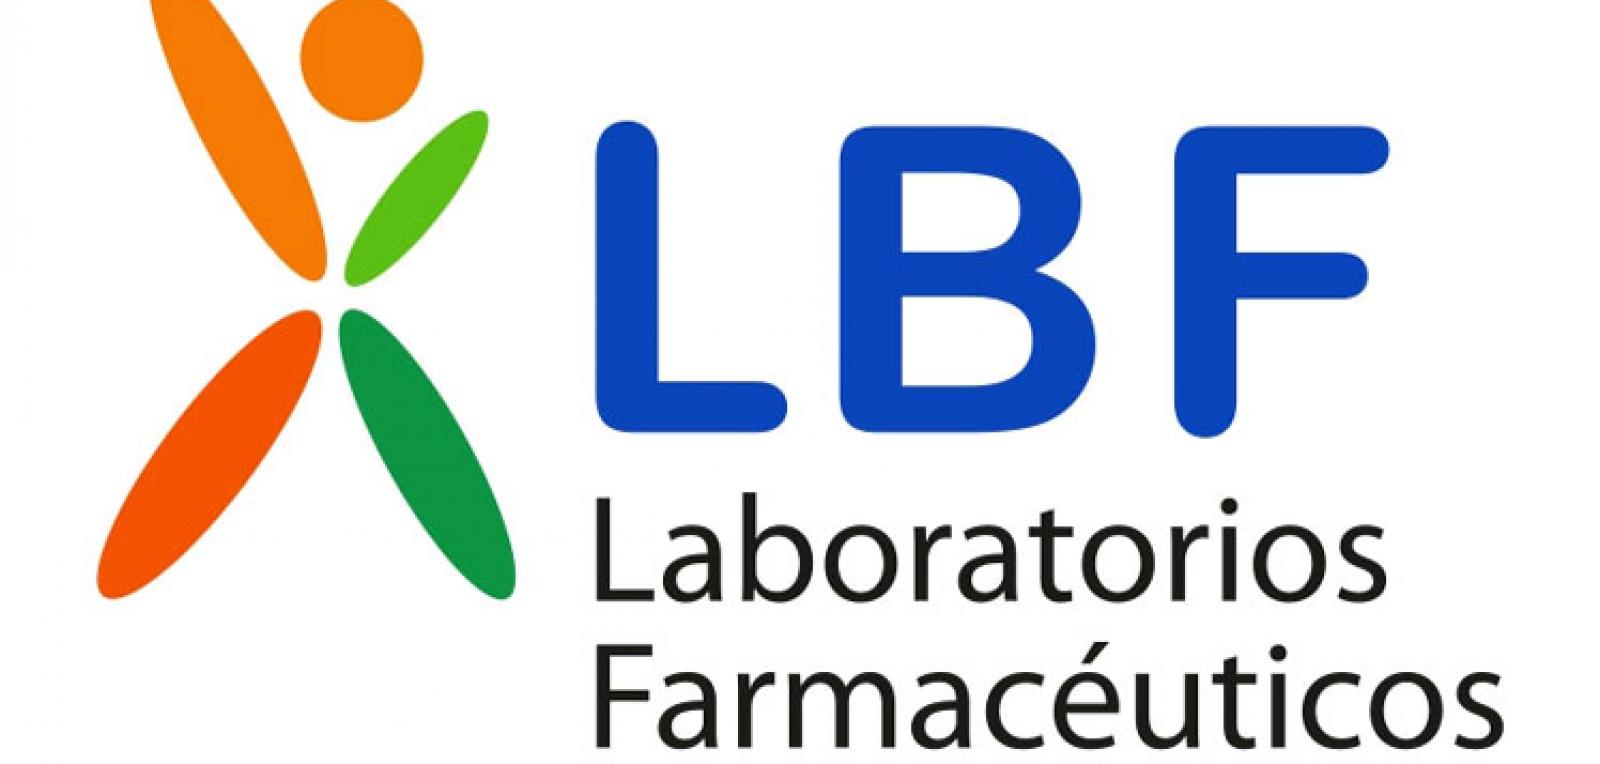 Laboratorio farmacéutico en Cuba con nuevos productos naturales